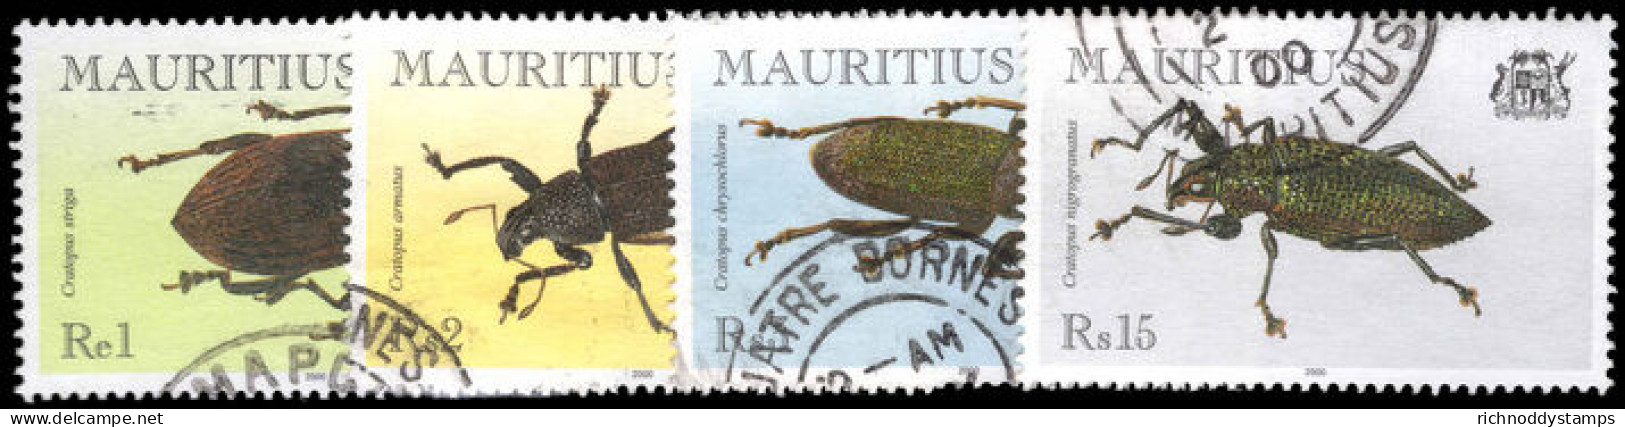 Mauritius 2000 Beetles Fine Used. - Maurice (1968-...)